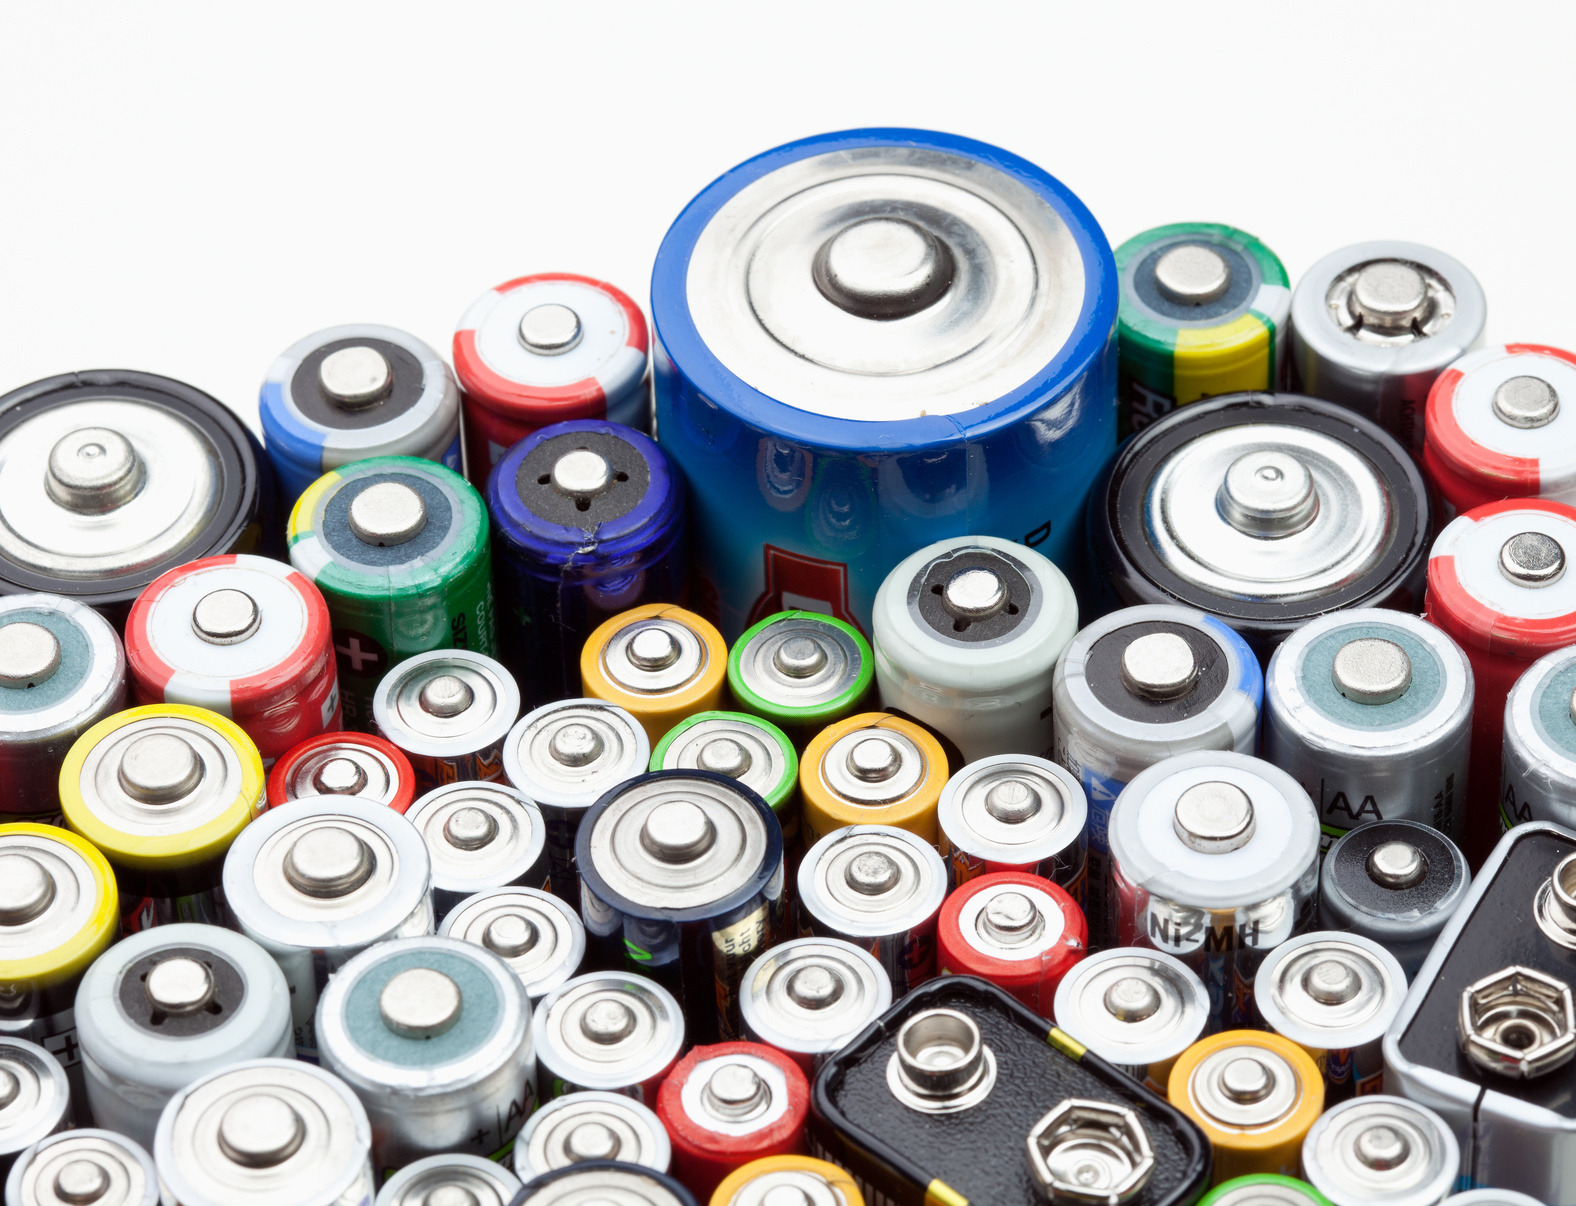 Autobatterie entsorgen: Wo die Batterie hingehört 